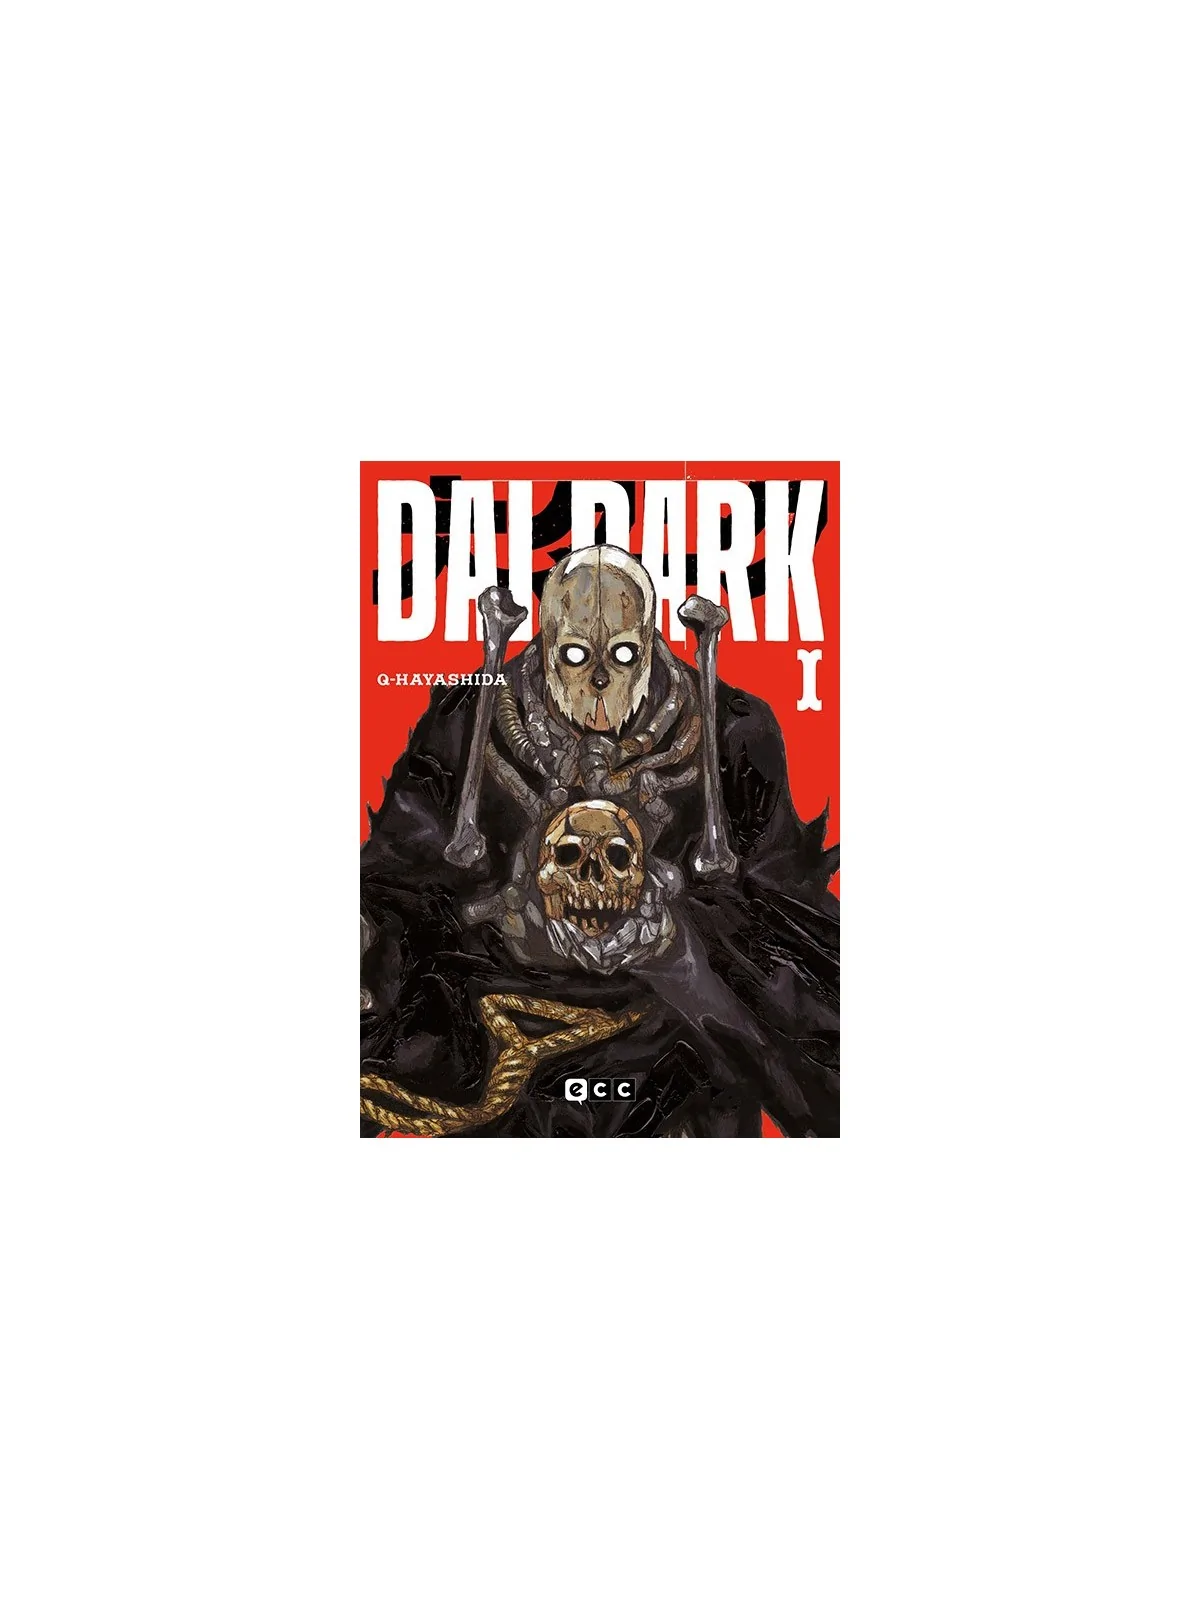 Comprar Dai Dark 01 barato al mejor precio 11,35 € de Ecc Ediciones